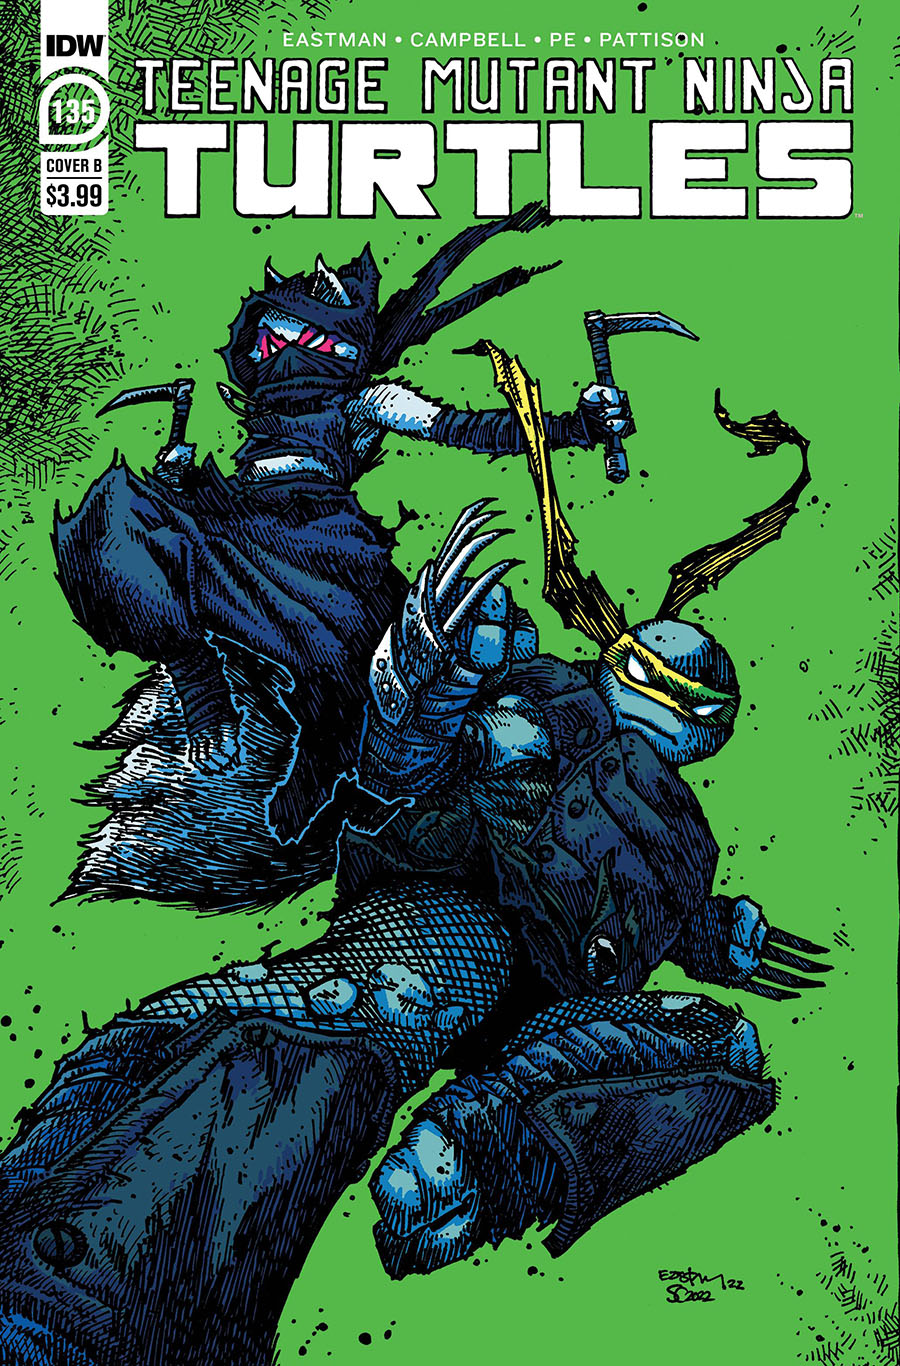 Teenage Mutant Ninja Turtles Vol 5 #135 Cover B Variant Kevin Eastman Cover (Armageddon Game Tie-In)